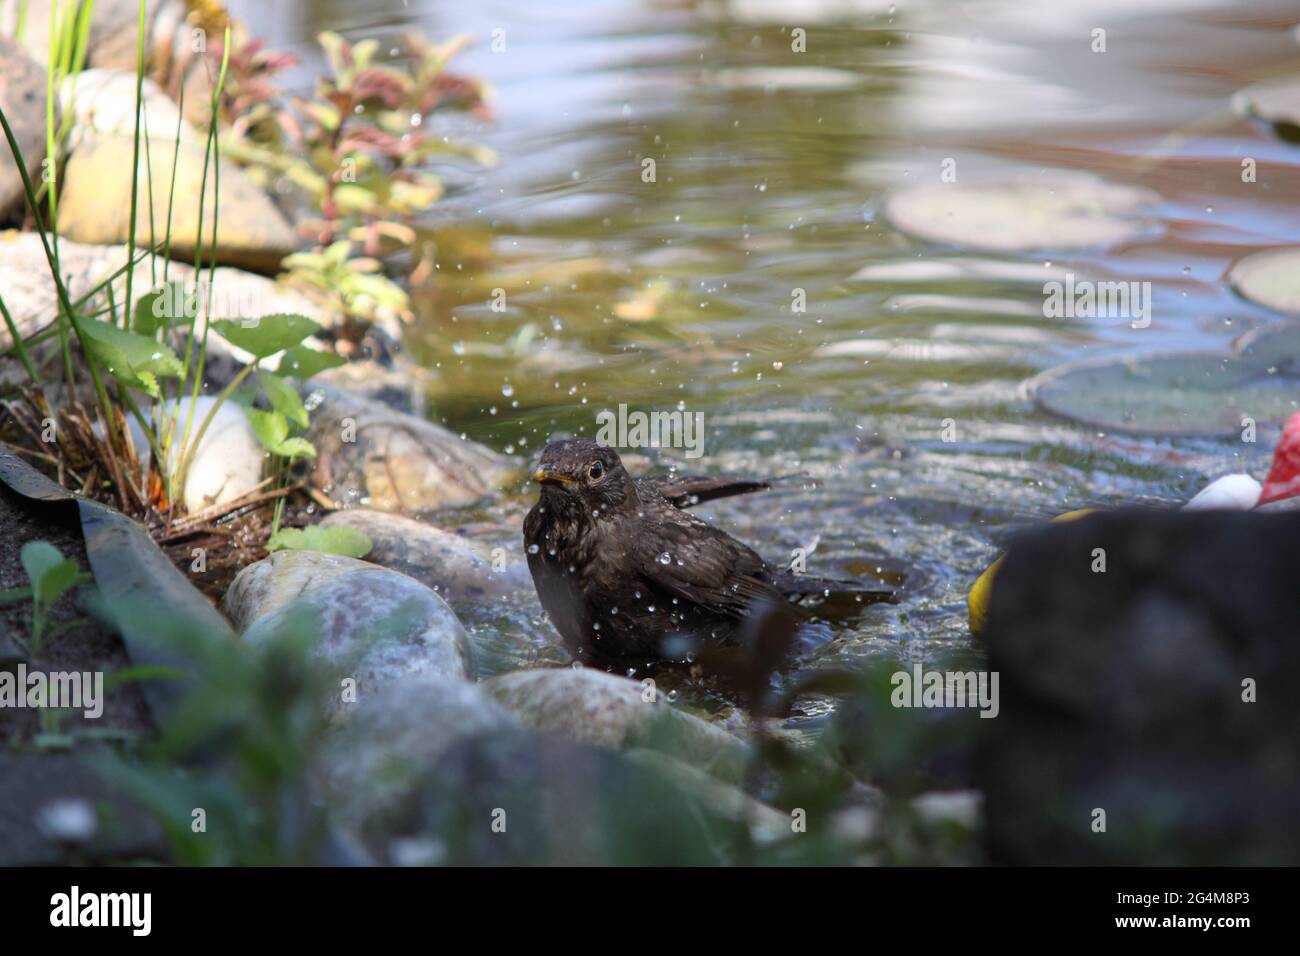 Ave negra juvenil después de bañarse en estanque de jardín con gotas de agua, Turdus merula, Alemania Foto de stock